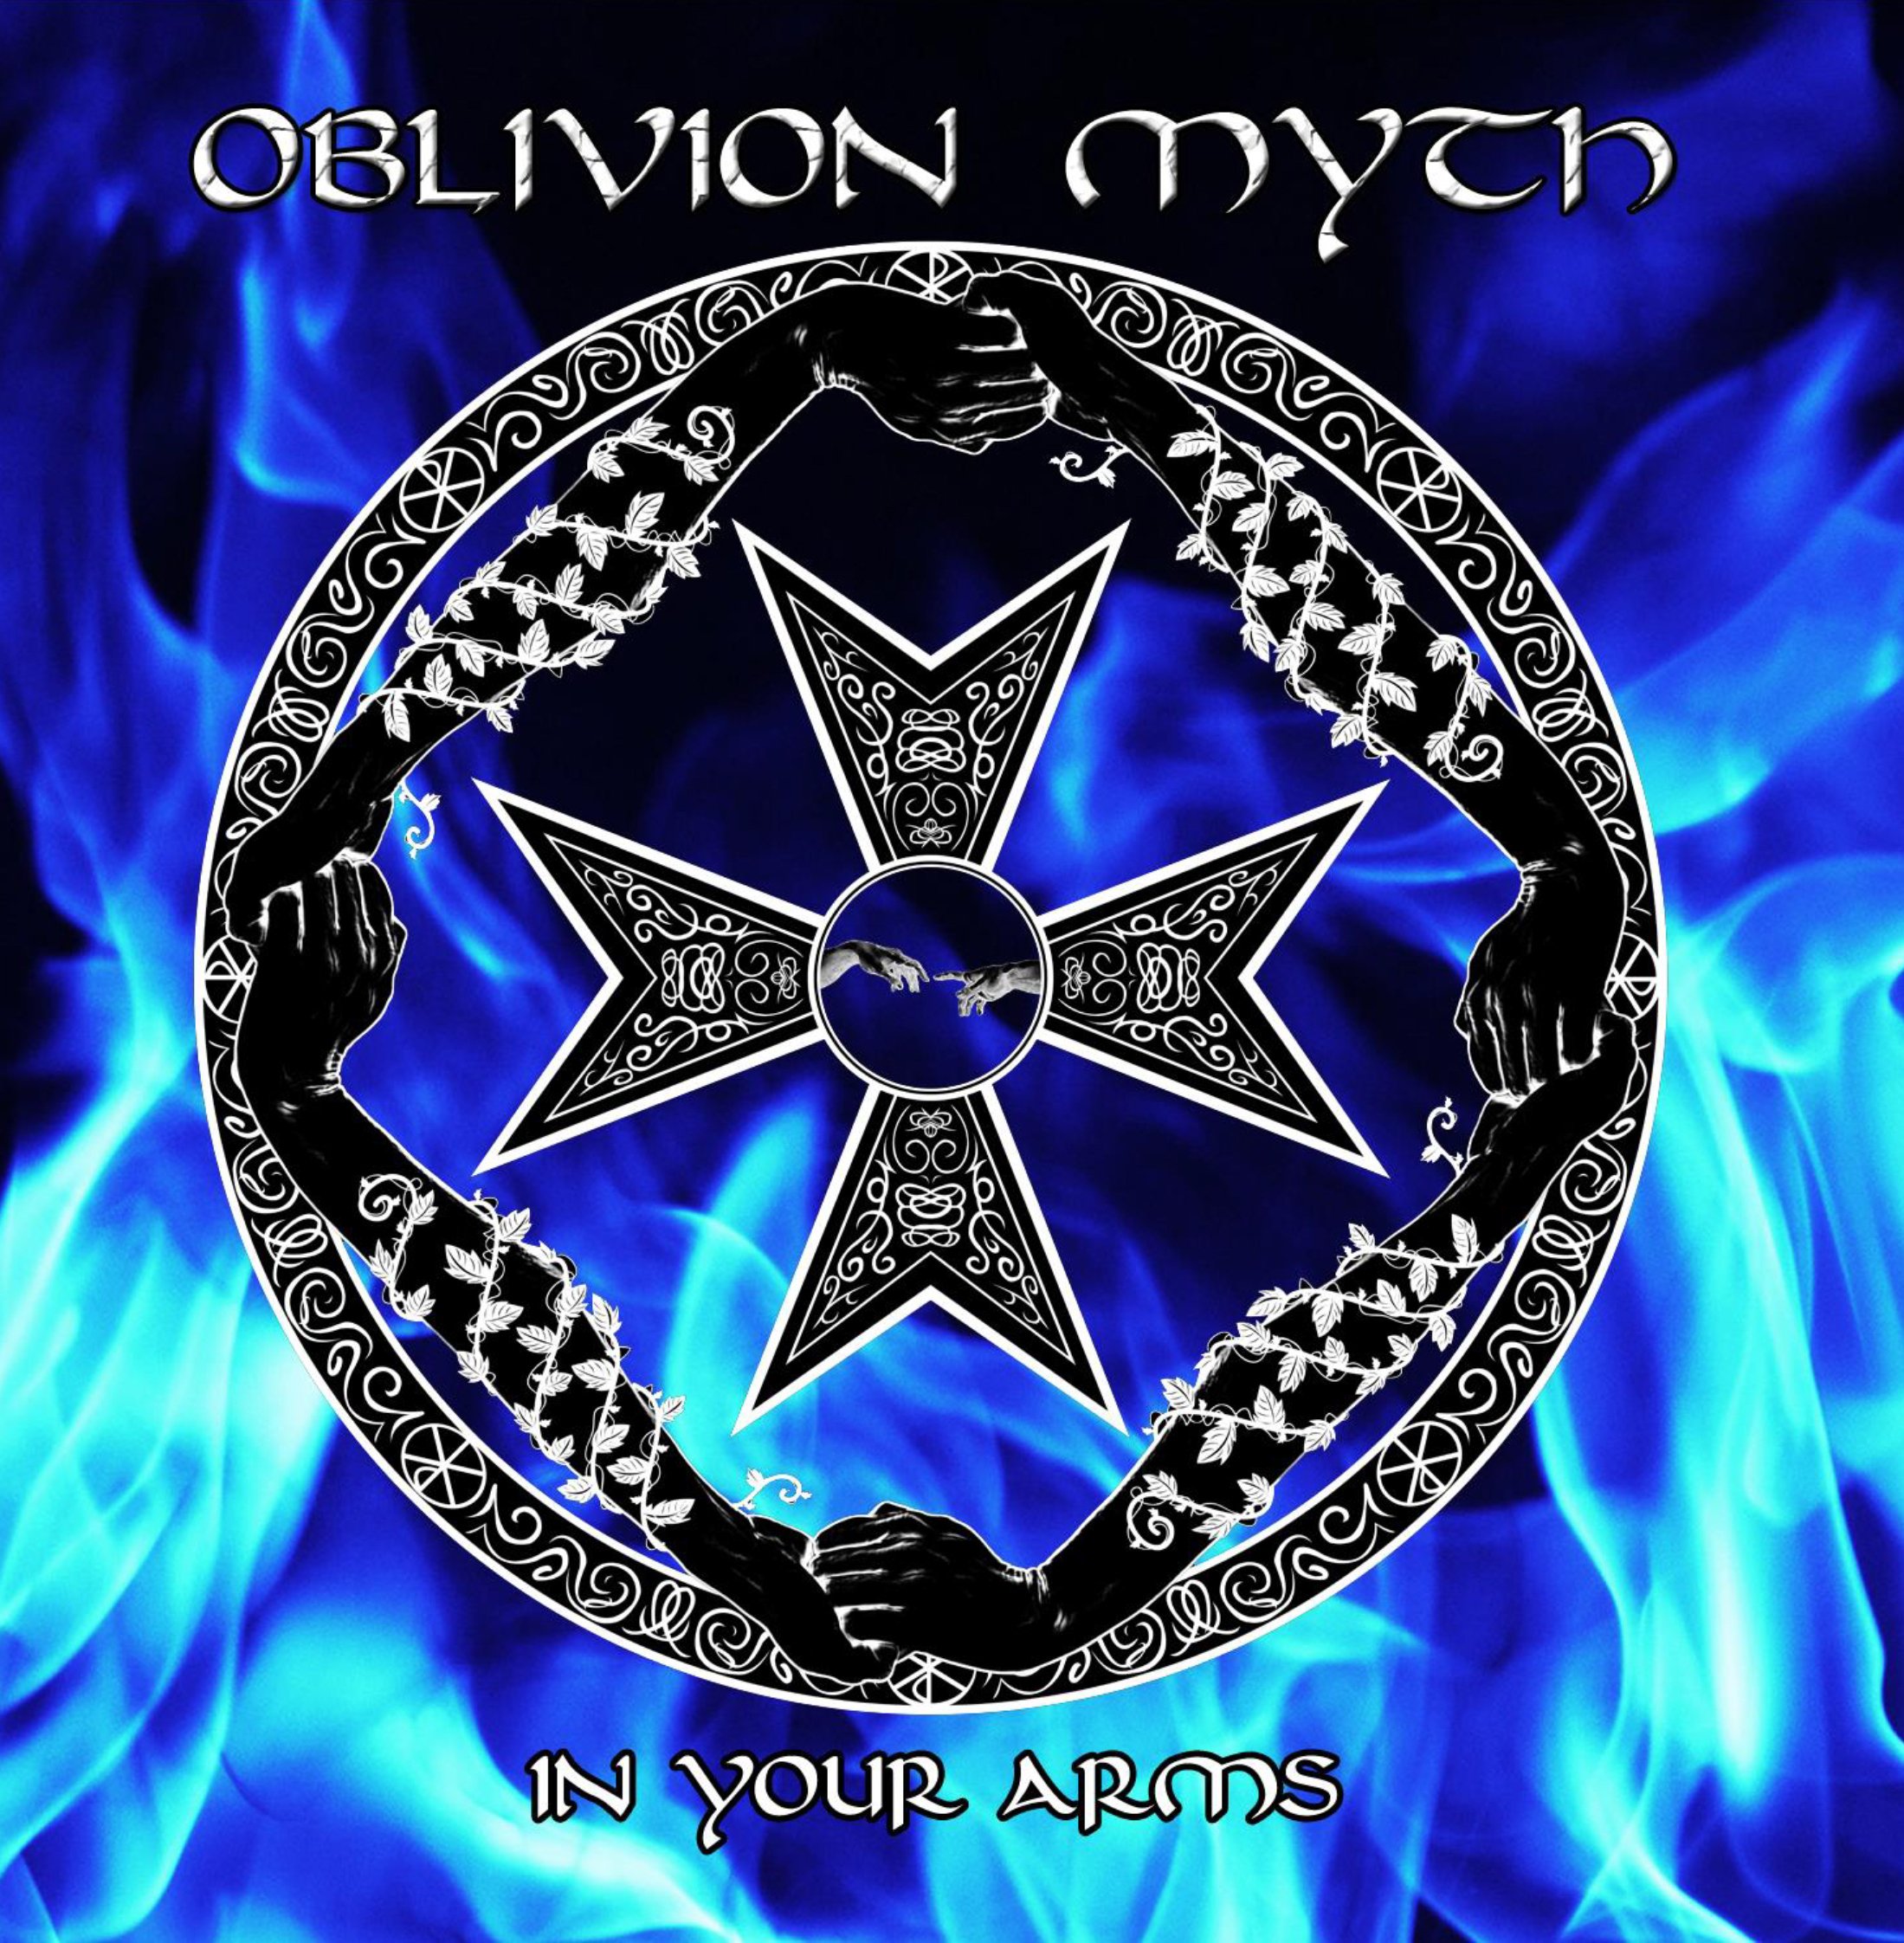 Mythic metals. Oblivion Mythology. Cradle of Filth Dusk and her Embrace.